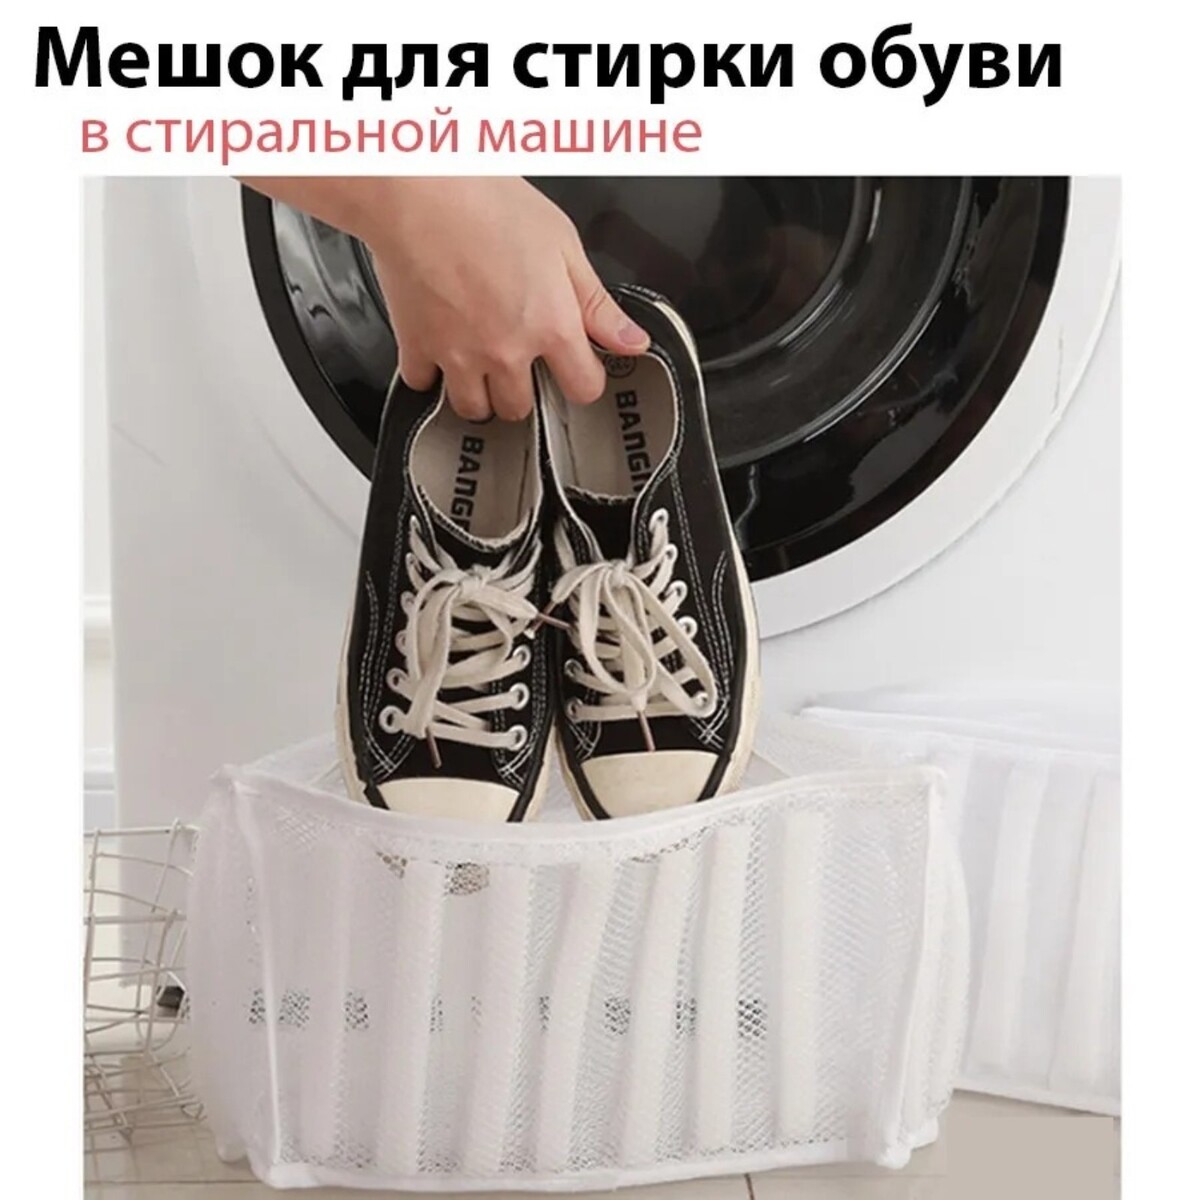 Мешок для стирки обуви доляна, 33×19×18 см, для обуви до 42 размера мешок для стирки бюстгальтеров air mesh с вышивкой белый 22×20×15 см